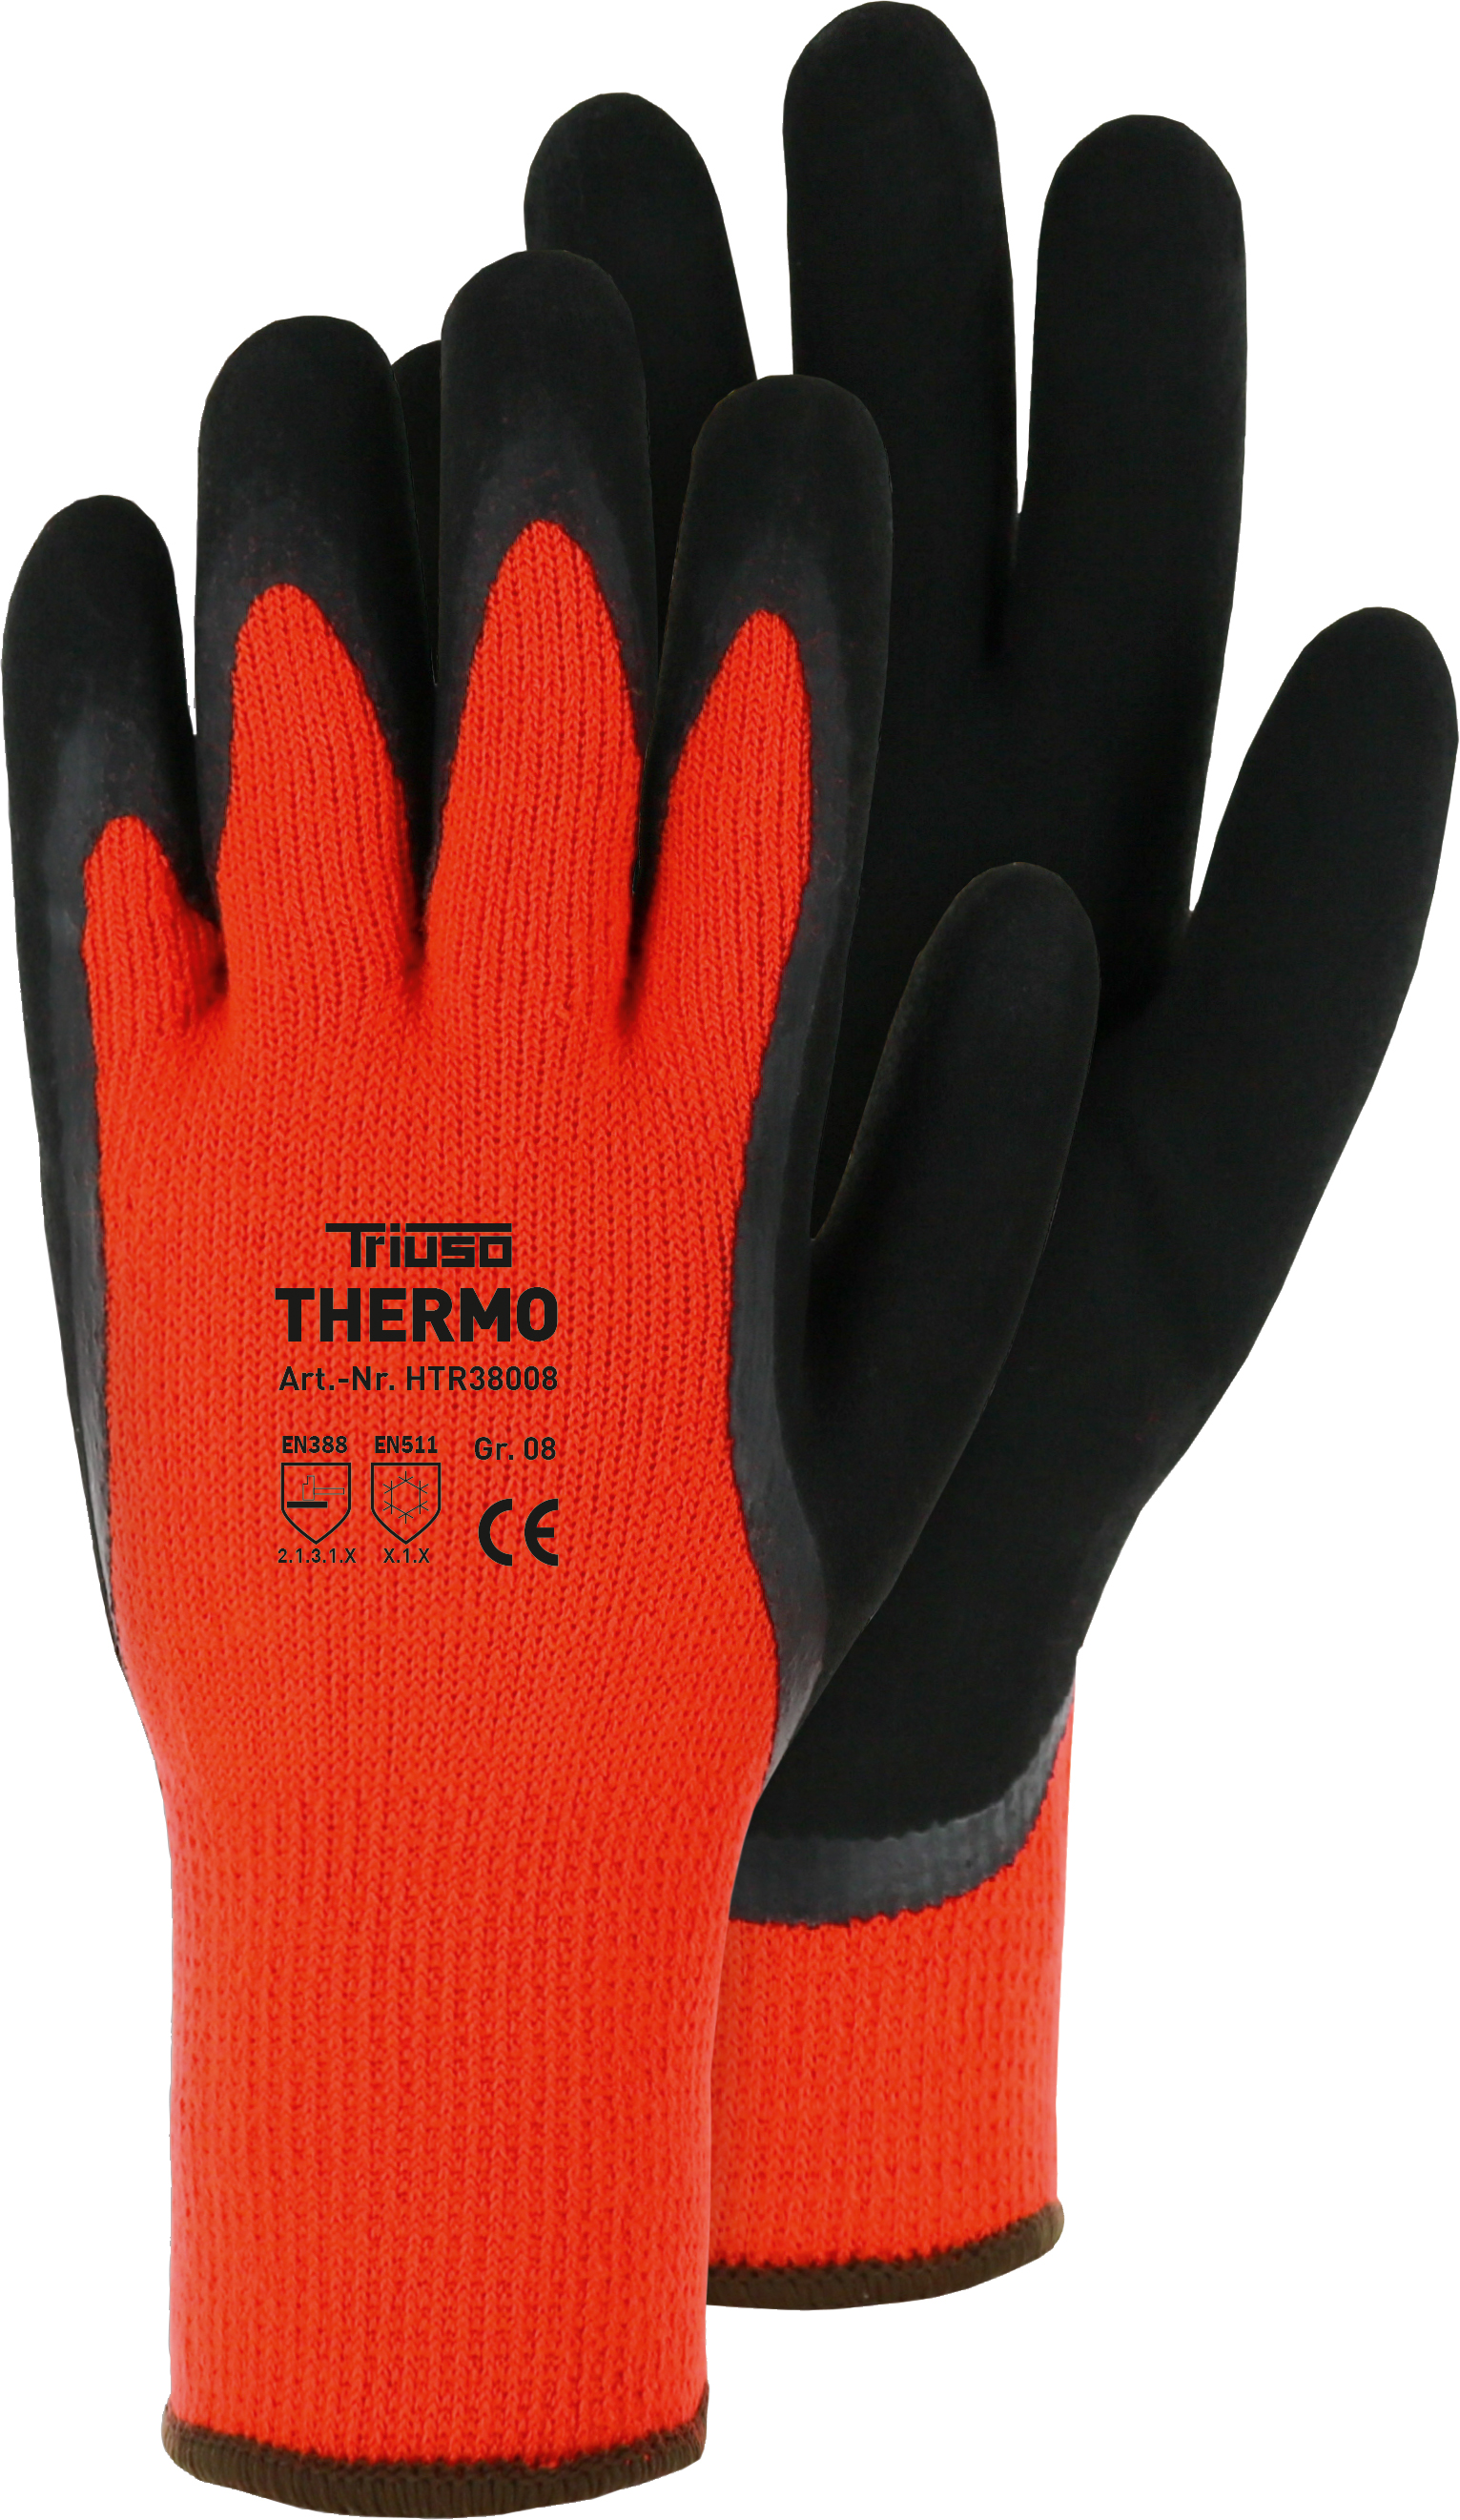 Triuso Thermo-Handschuh, orange Gr. 9